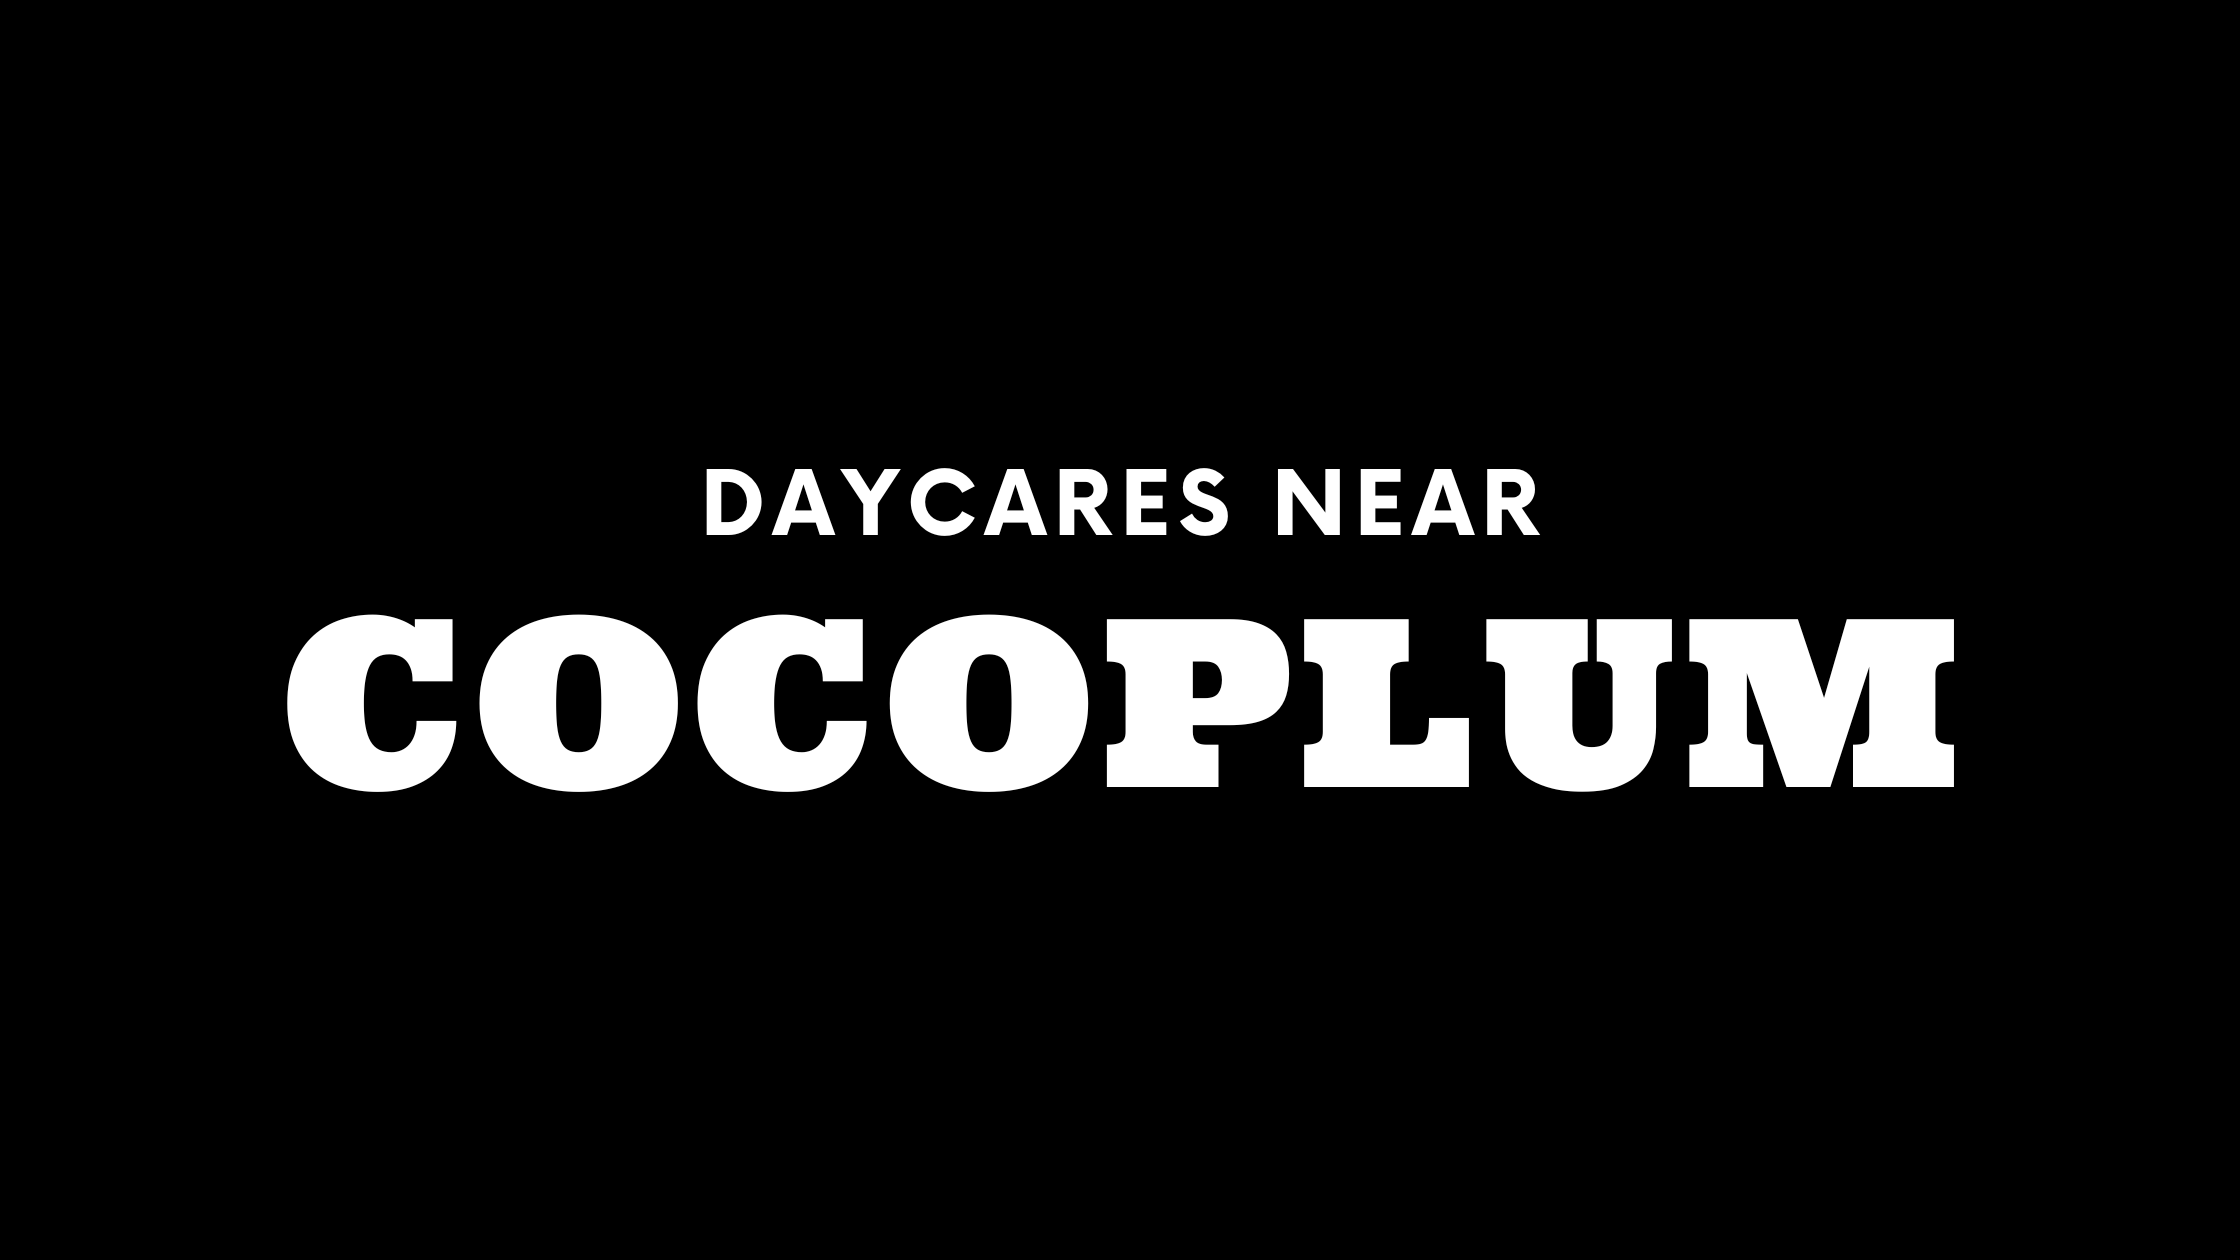 Daycares near Cocoplum